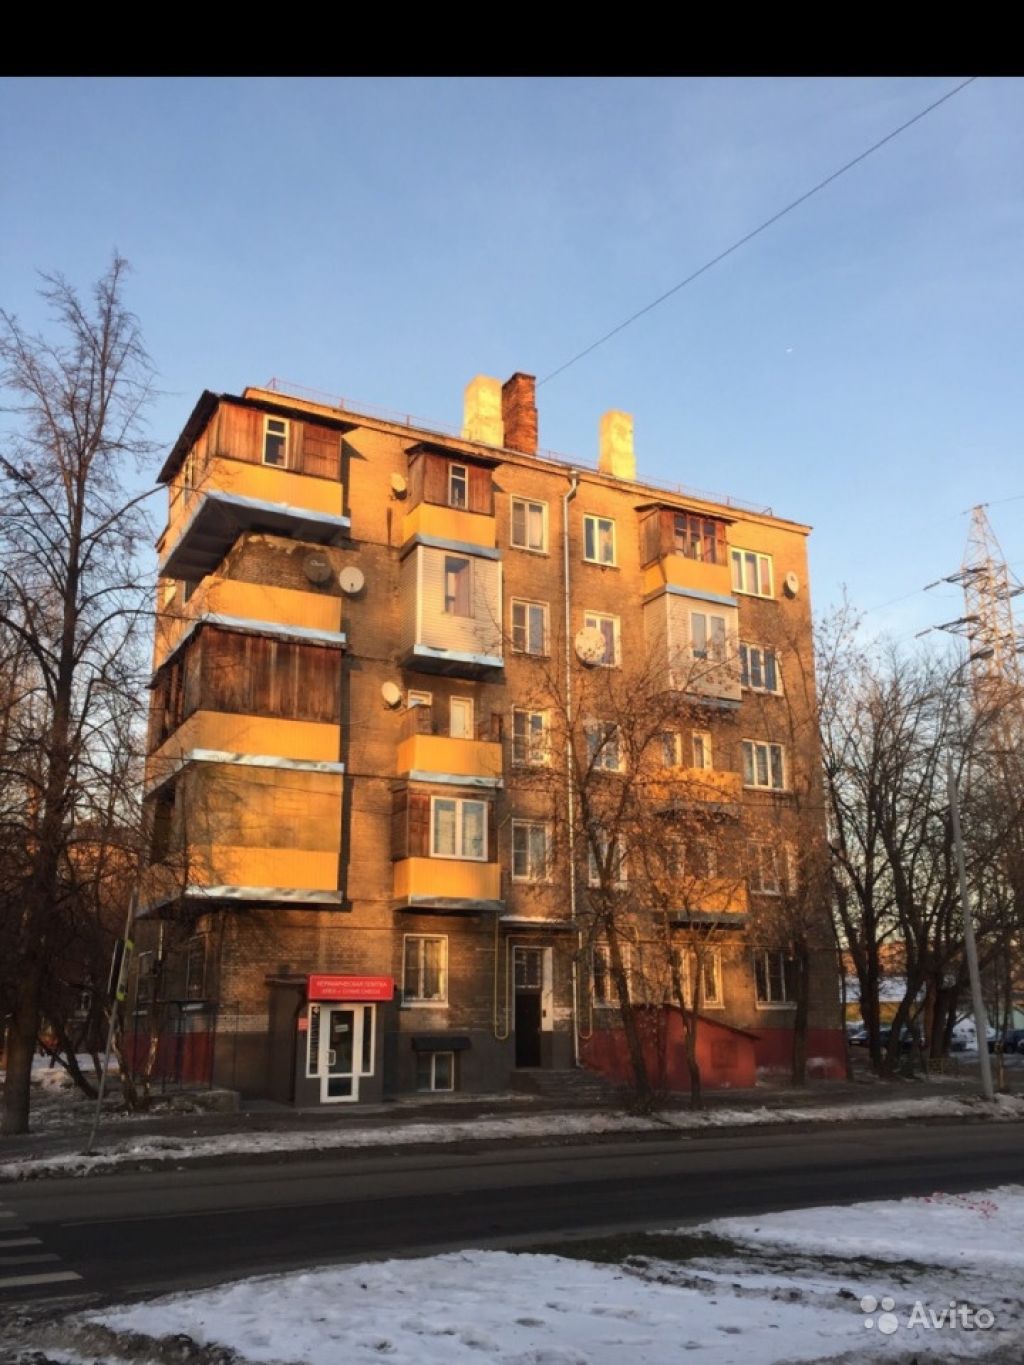 Продам квартиру 3-к квартира 84 м² на 5 этаже 5-этажного кирпичного дома в Москве. Фото 1